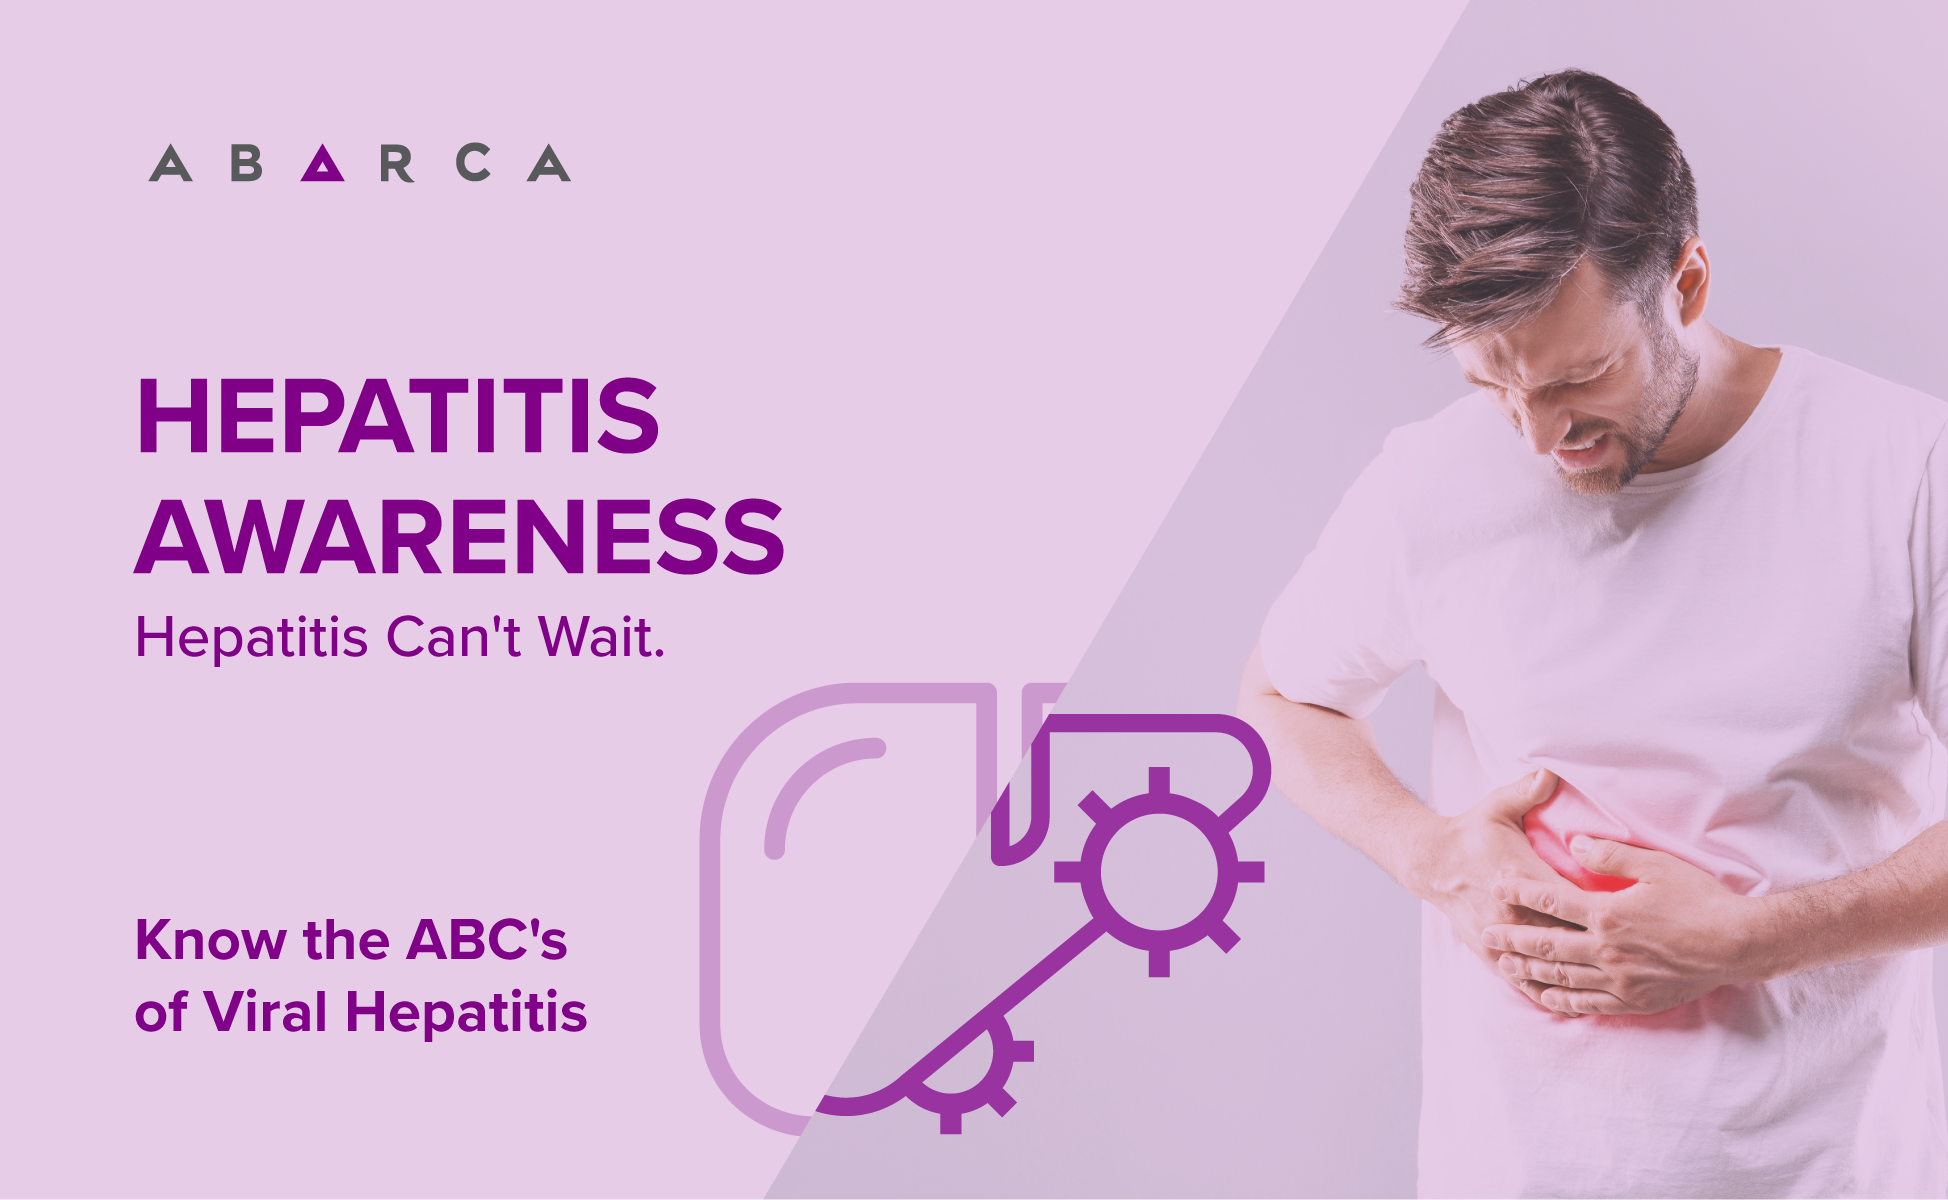 Abarca brings Awareness to Viral Hepatitis Awareness: Hepatitis Can't Wait